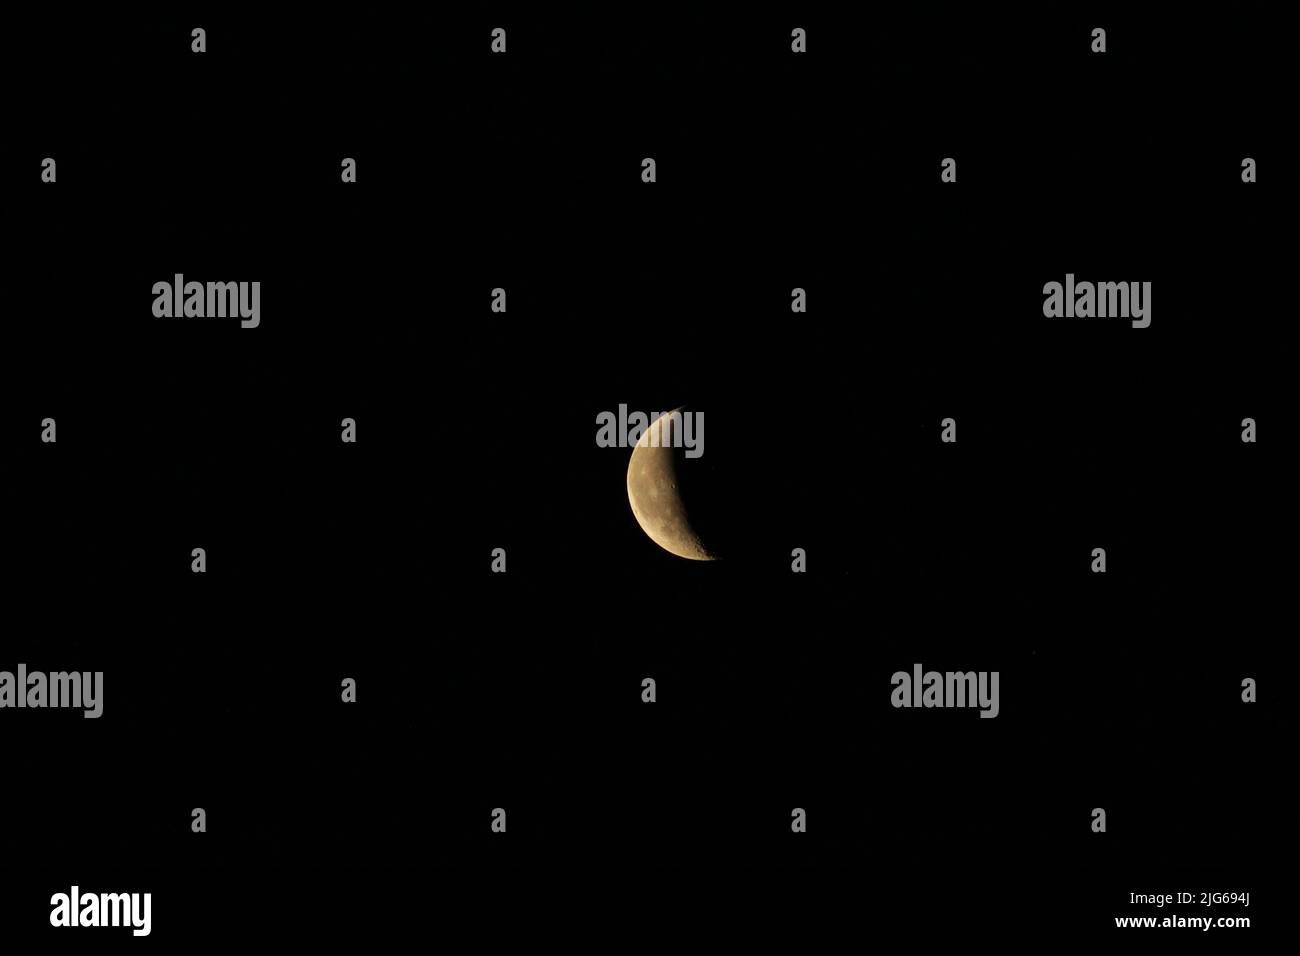 Wunderschöner Mond auf schwarzem Hintergrund Schwarzer Himmel Nacht Aufnahme Astrologischer Mondschuss mit hohen Details hochauflösende Aufnahme des Mondes Stockfoto